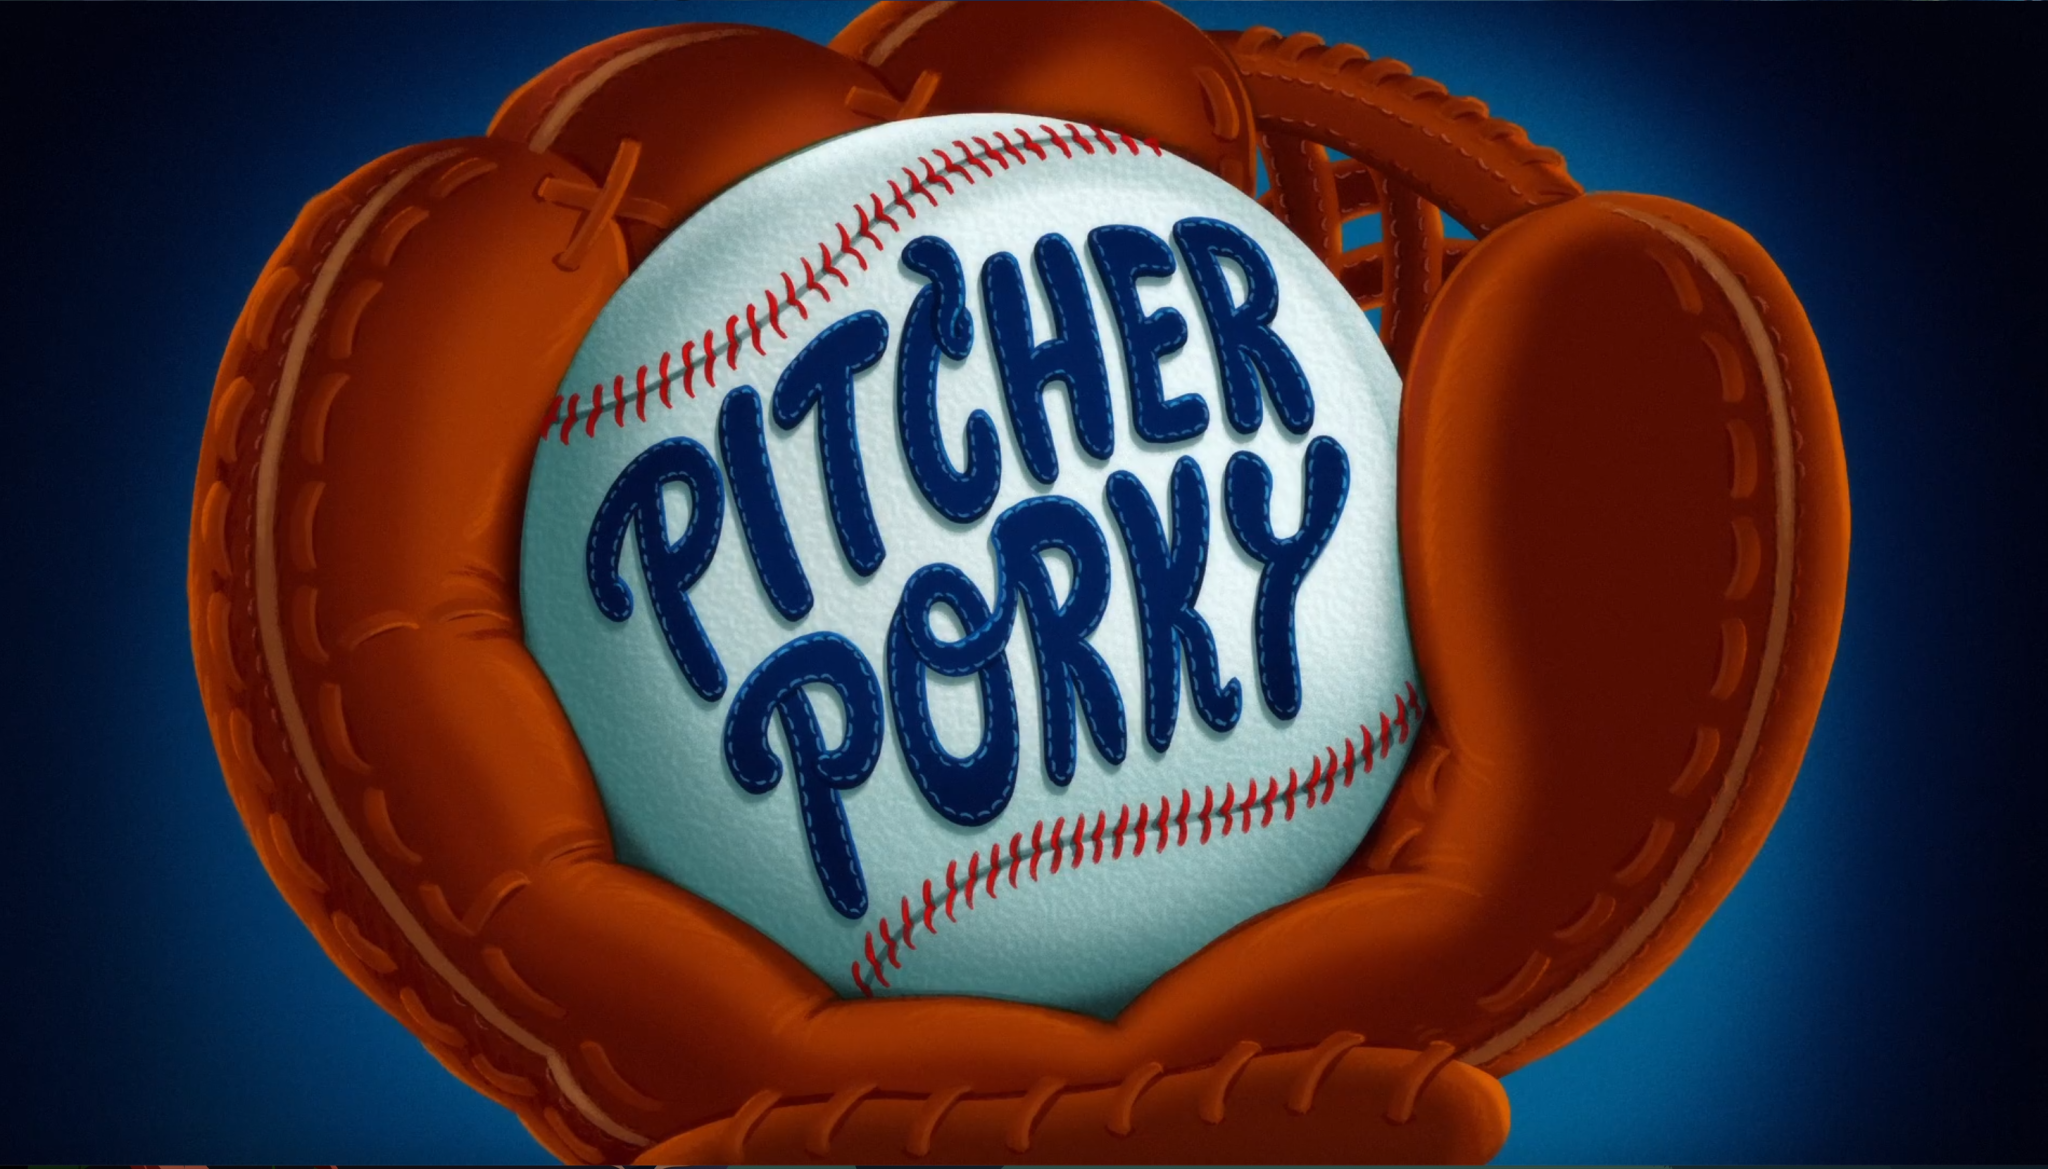 Pitcher Porky